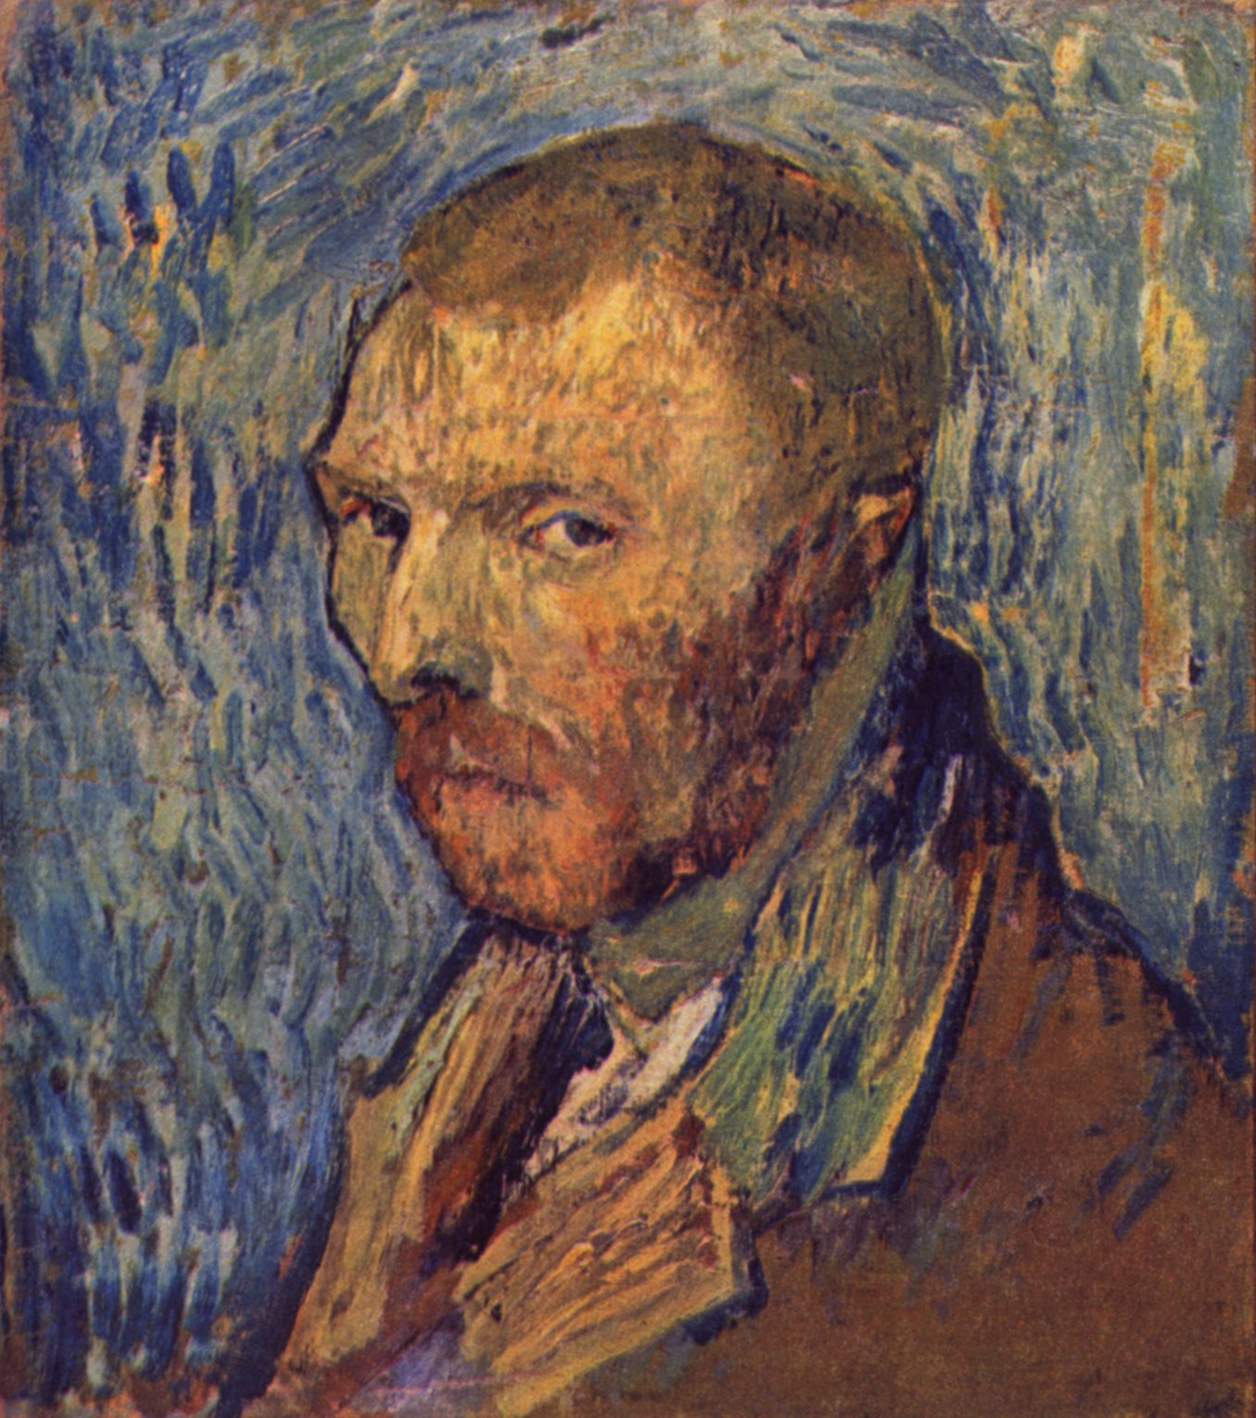 Circa Art - Vincent van Gogh - Circa Art - Vincent van Gogh 175.jpg